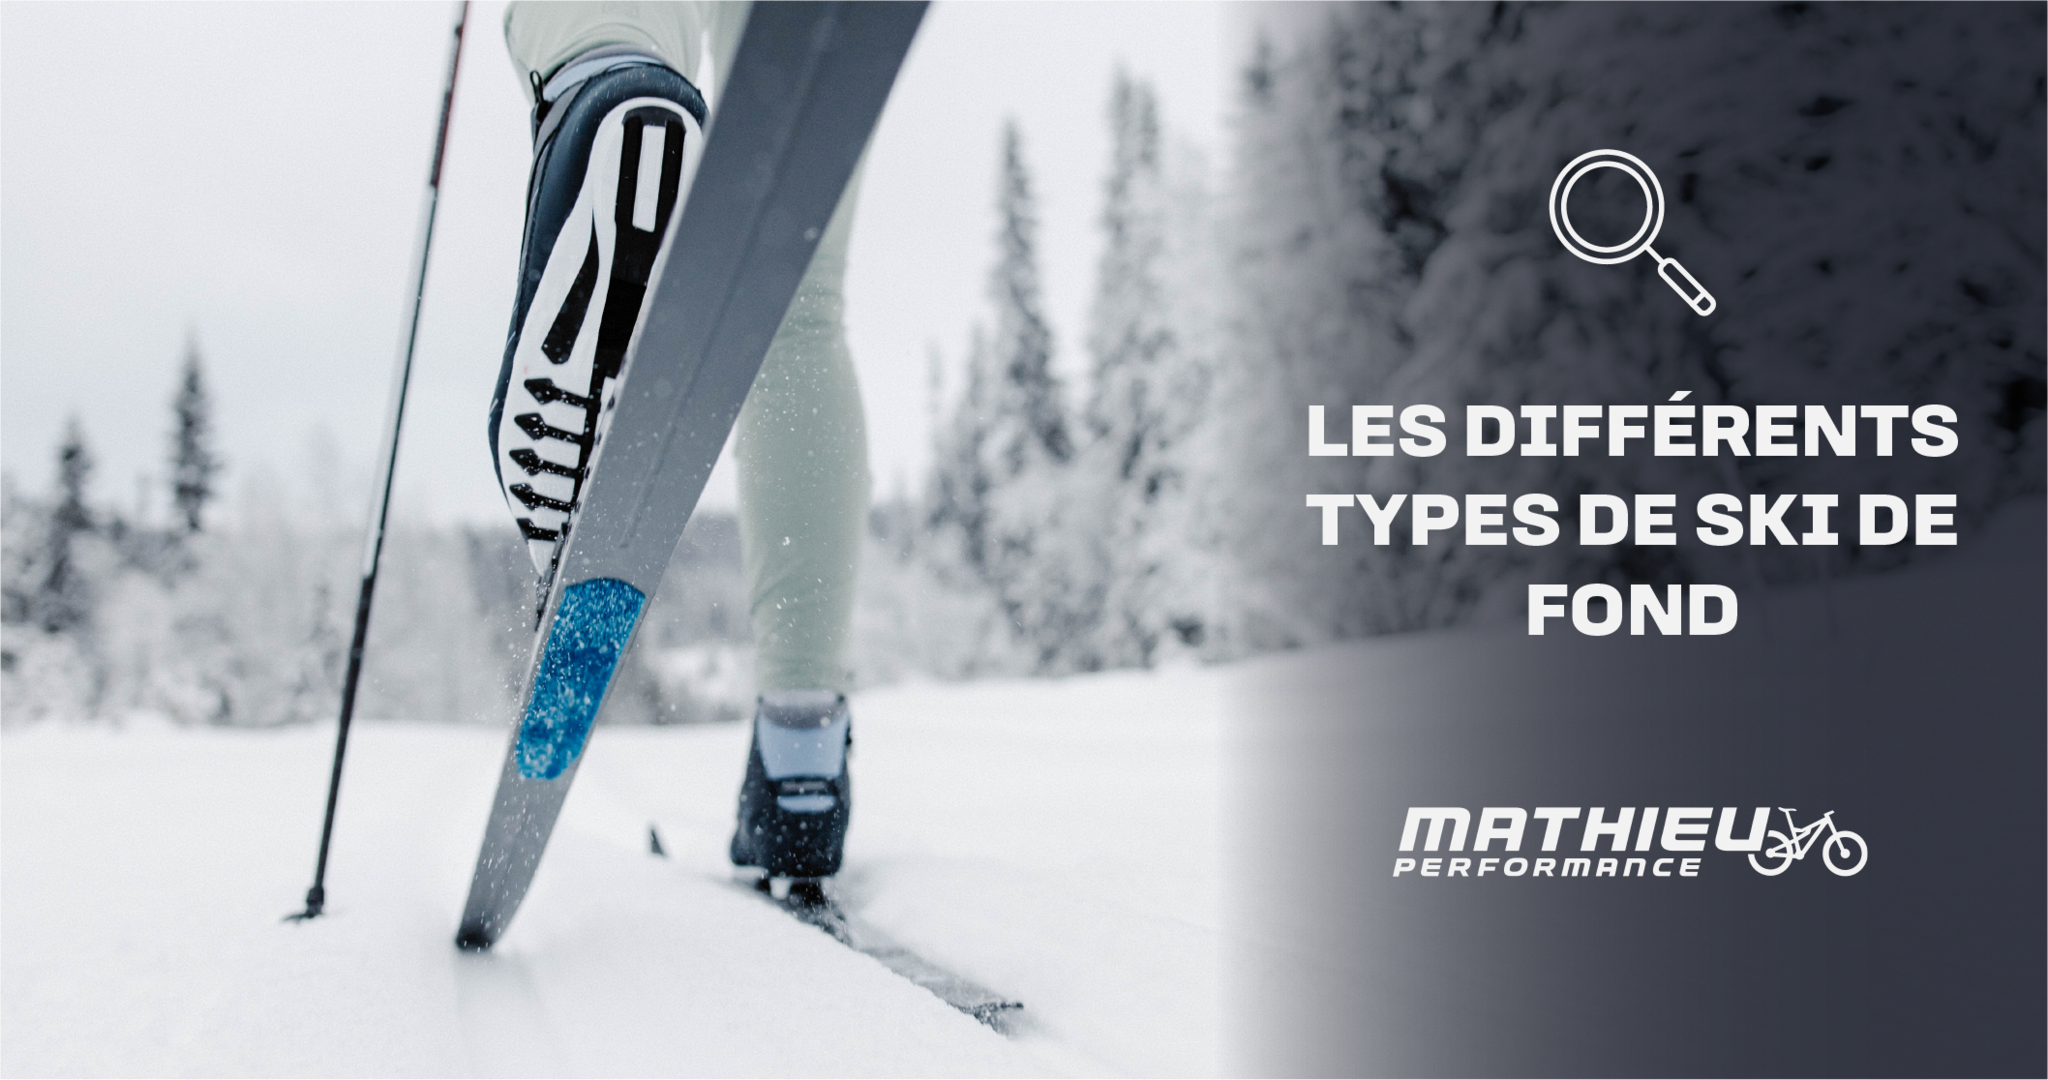 Les différents types de skis de fond - Mathieu